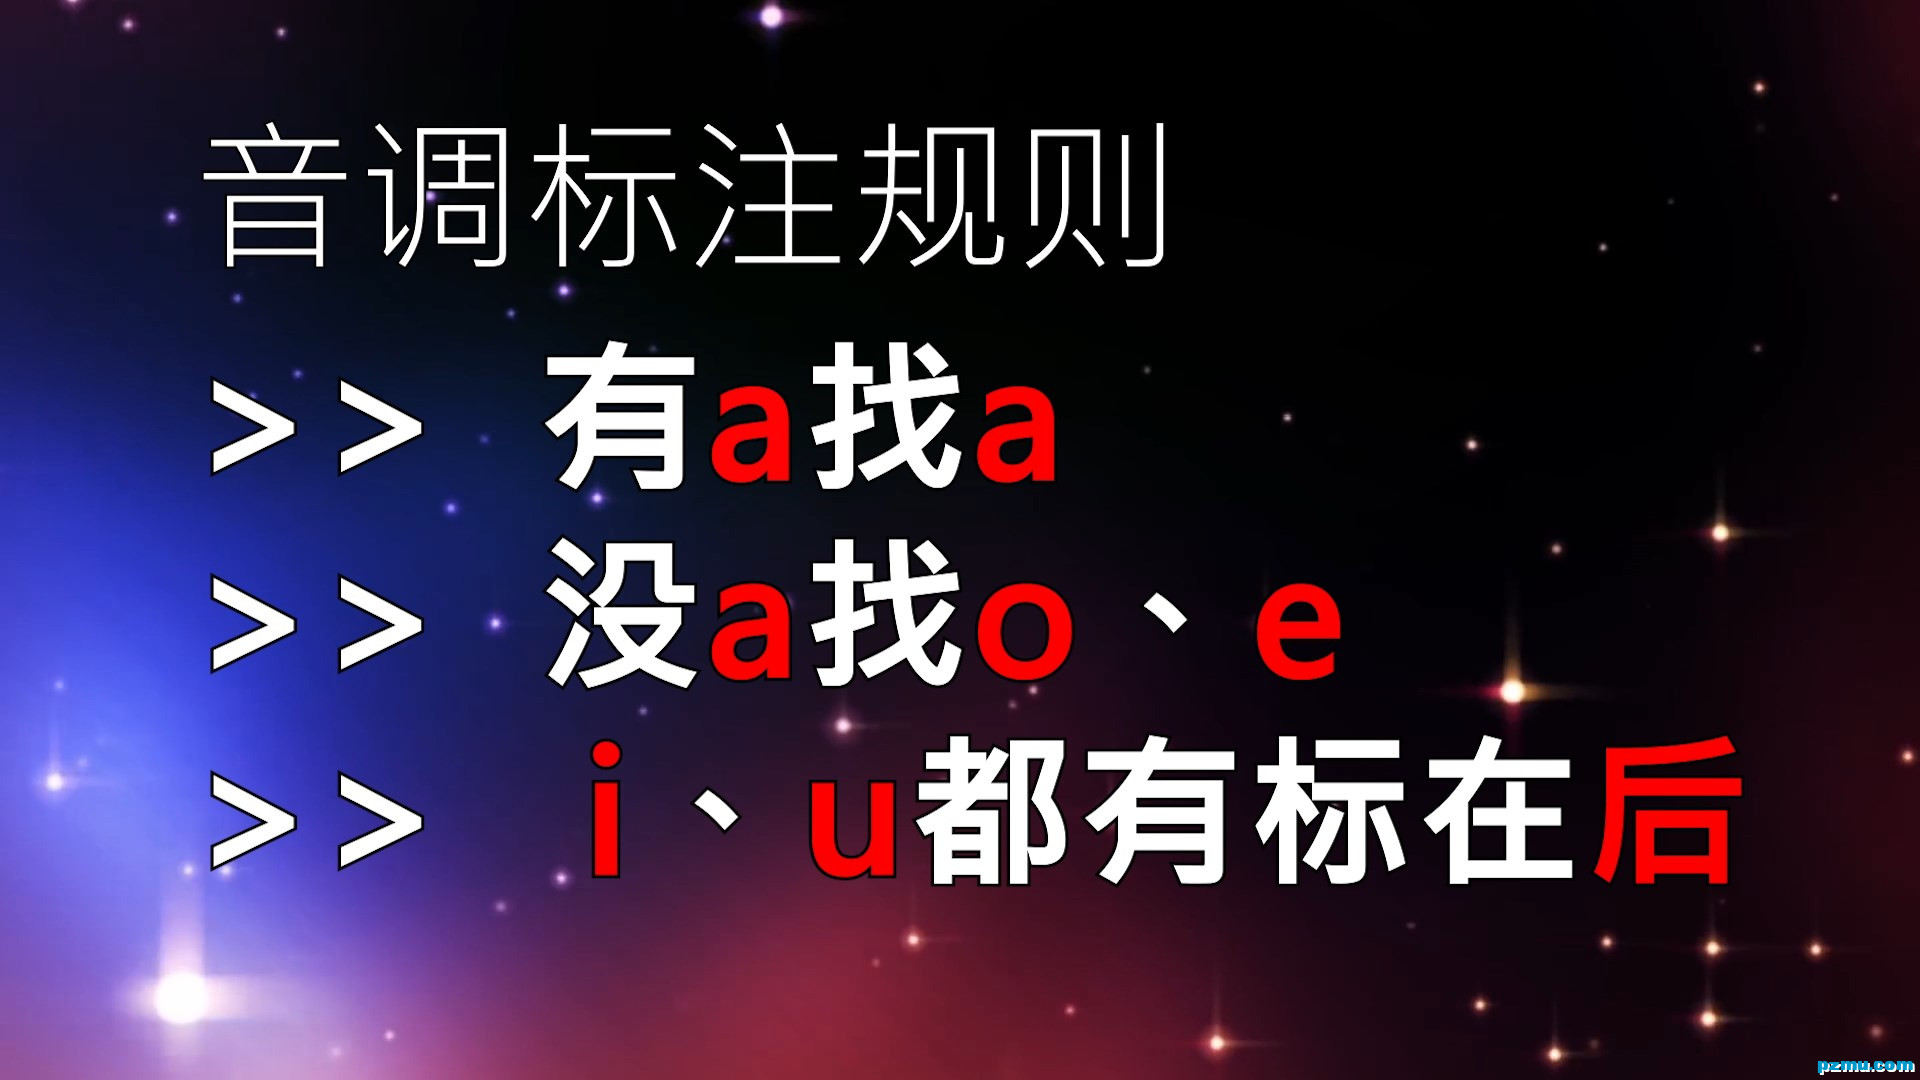 一起学汉语拼音-视频版.mp4_snapshot_05.34.976.jpg